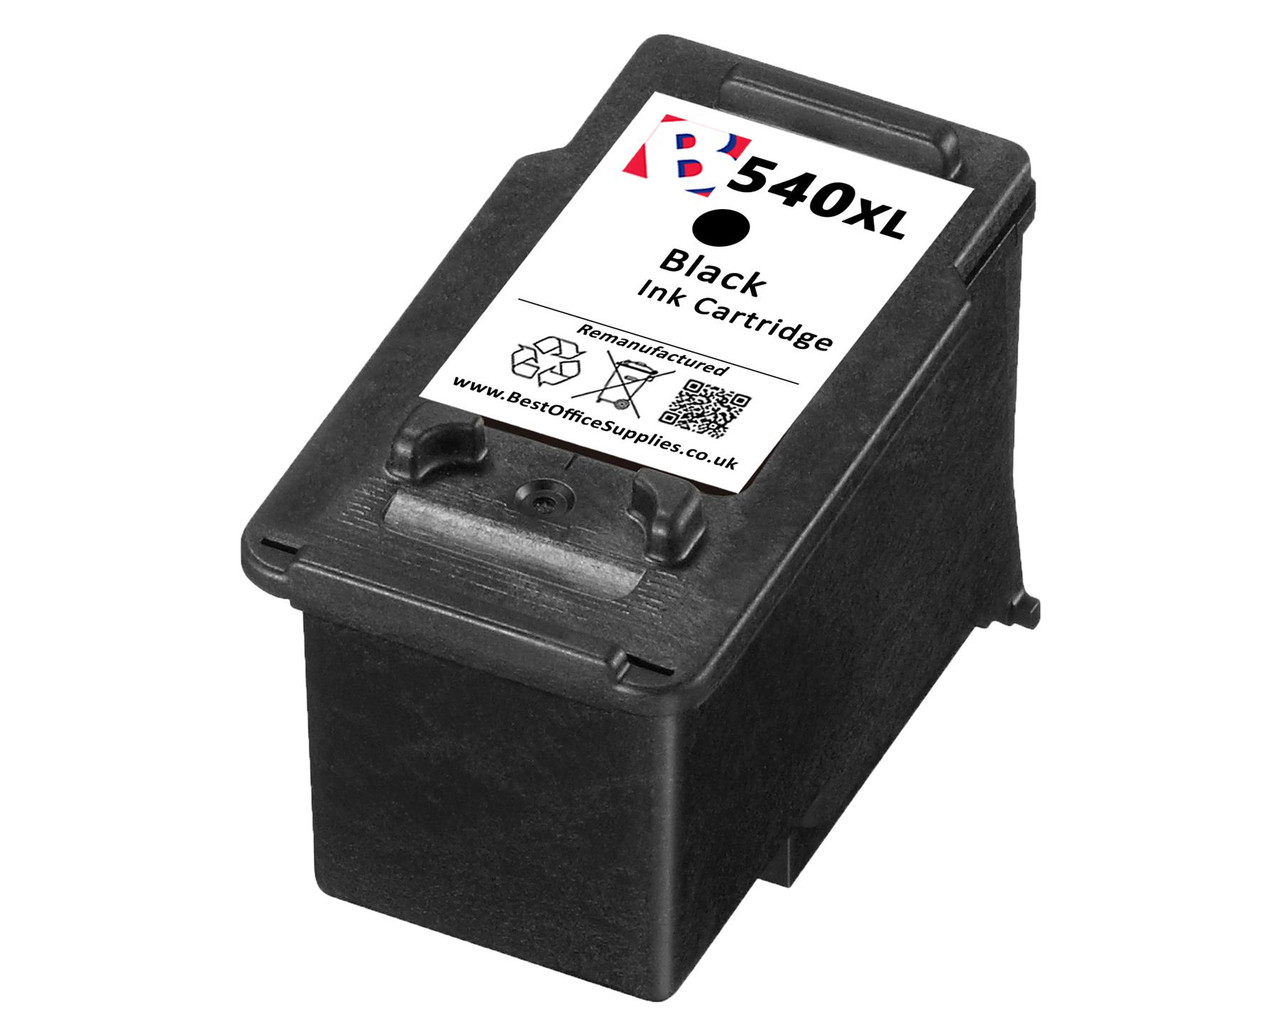 Kikker laser wrijving Canon PG-540 XL Black Remanufactured Ink Cartridge